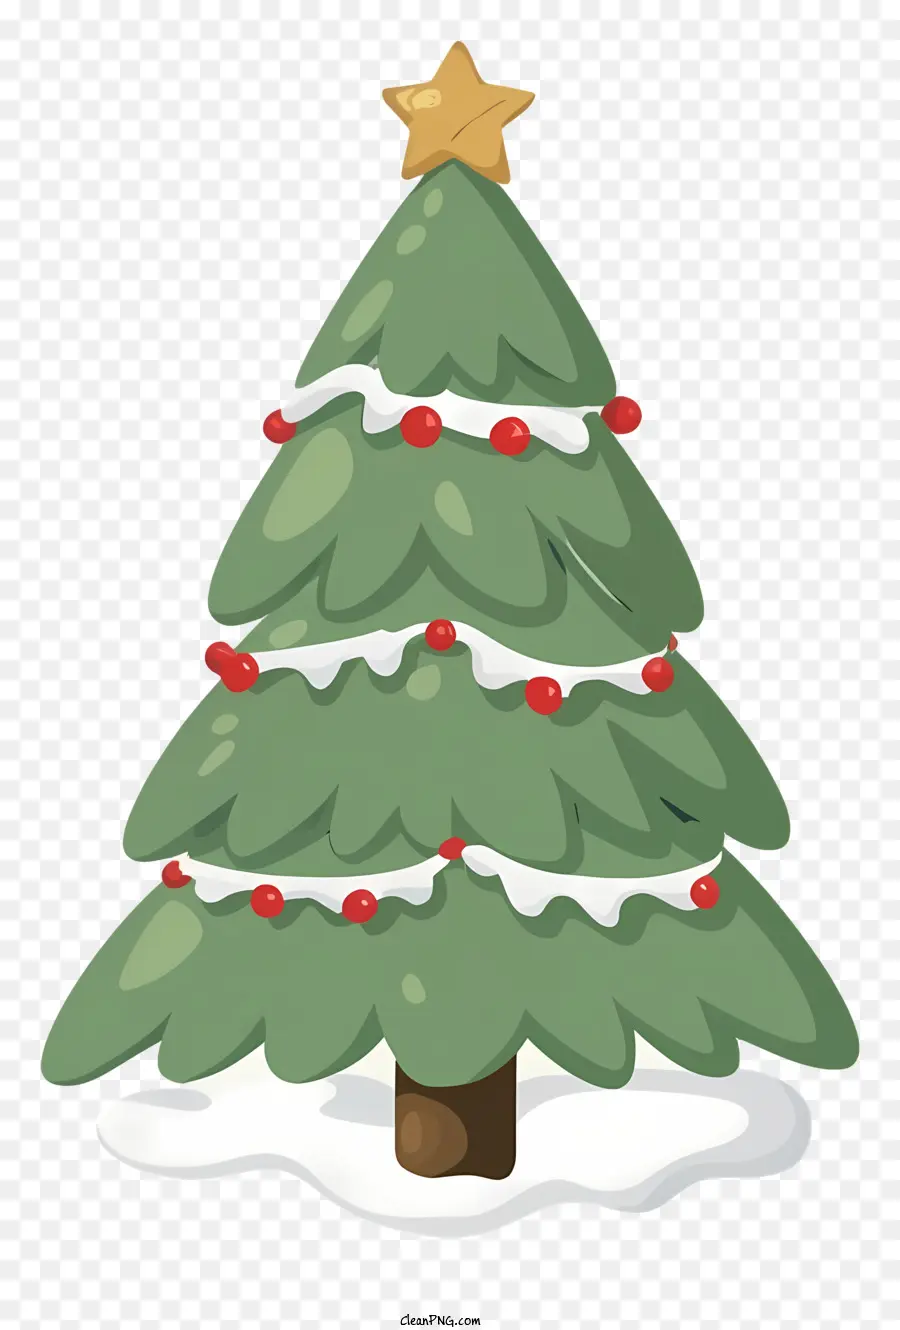 Weihnachtsbaum - Festlicher Weihnachtsbaum mit Beeren, Schnee und Stern